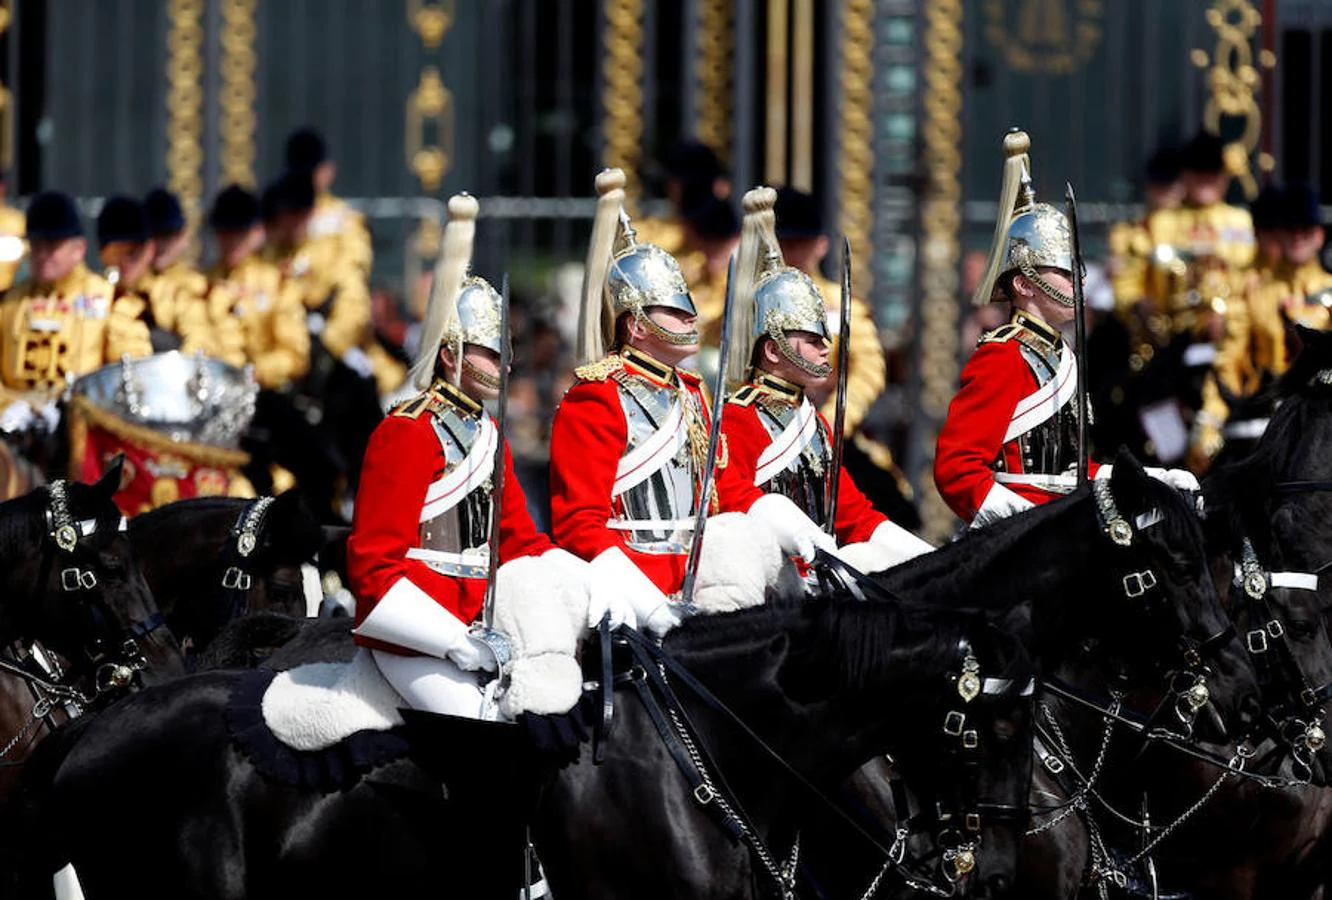 Trooping the Colour. Este evento, con tradición desde 1748, es un desfile militar en el que pasea la Guardia Real a caballo. Uniformados con su atuendo oficial, más de 600 guardias han acompañado a la Reina